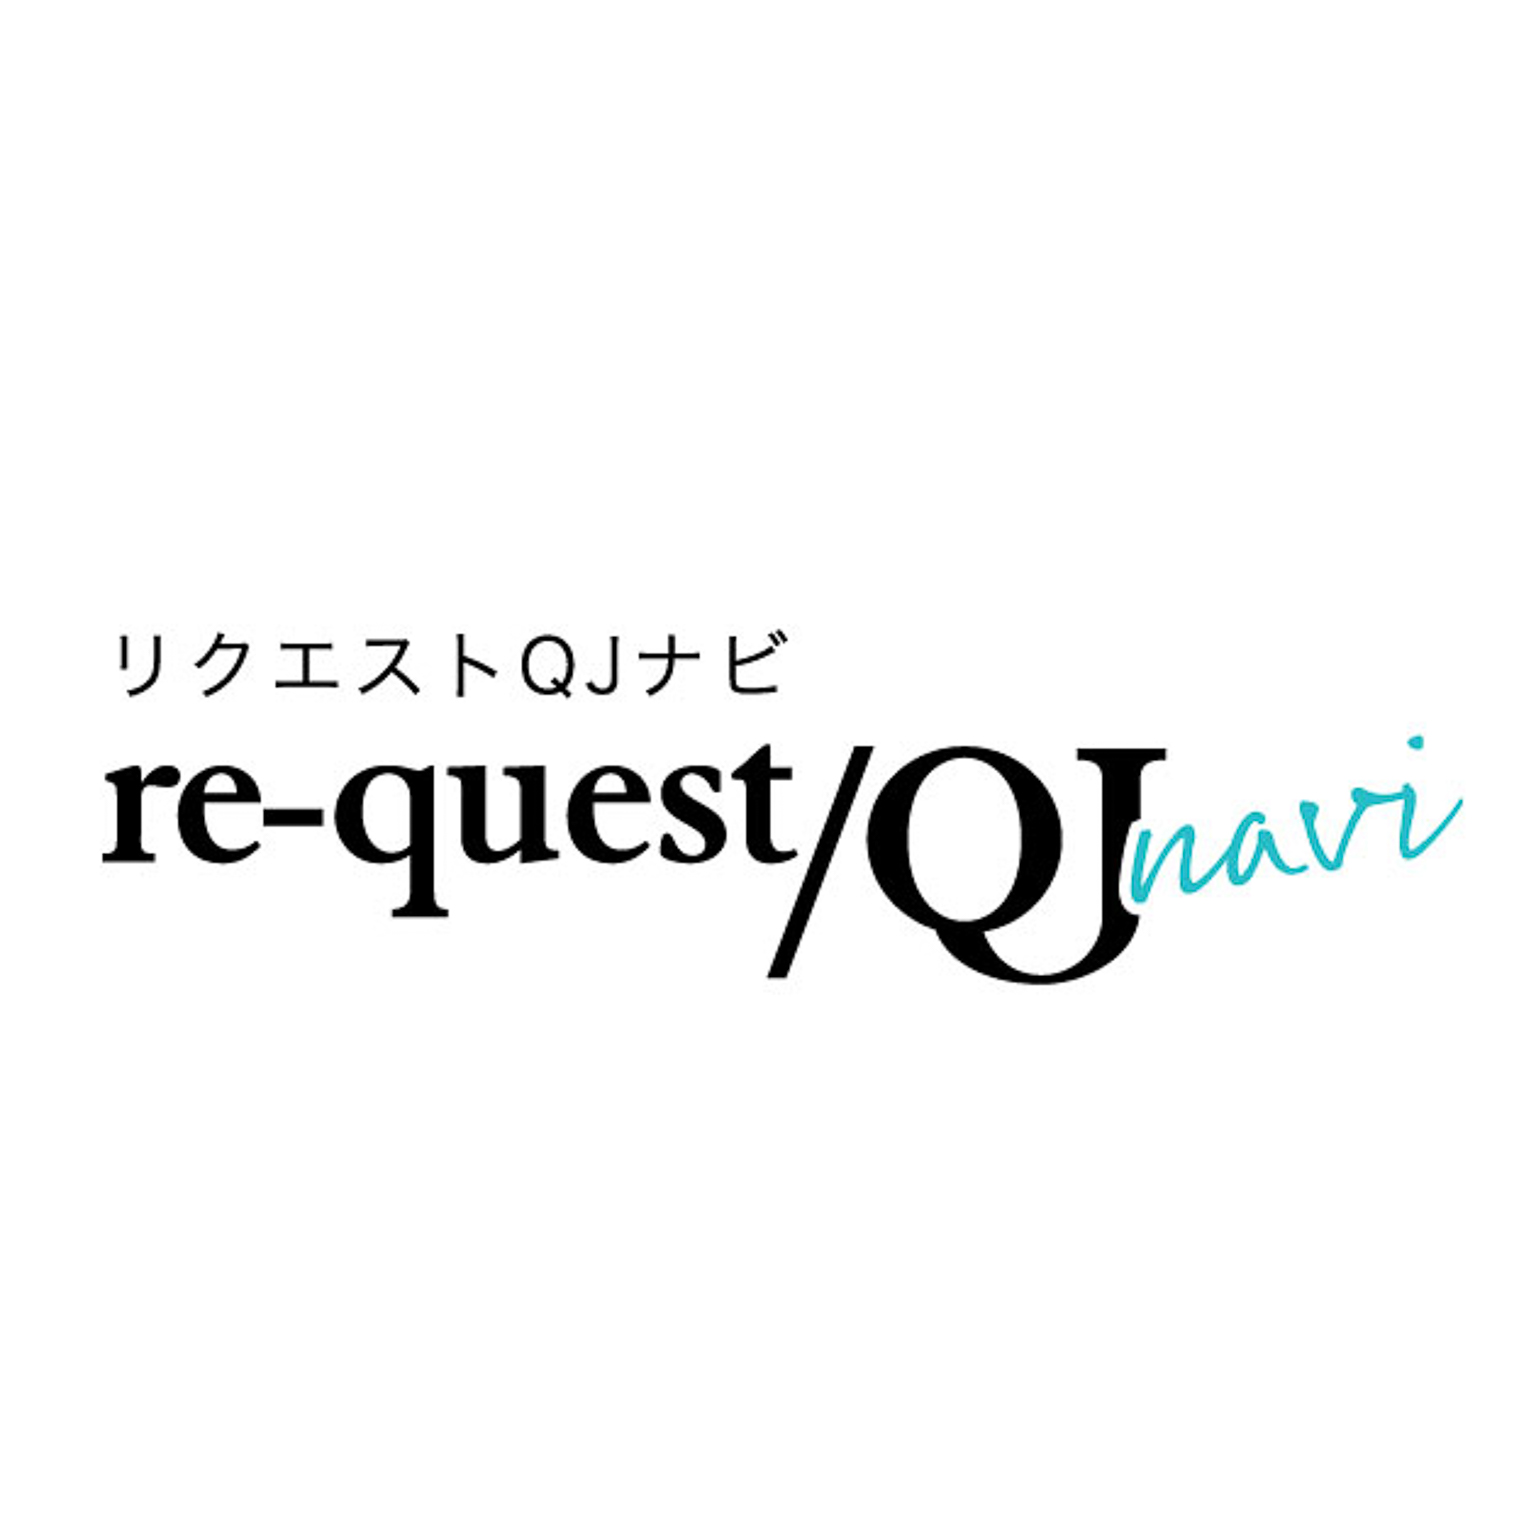 request/QJ Navi daily